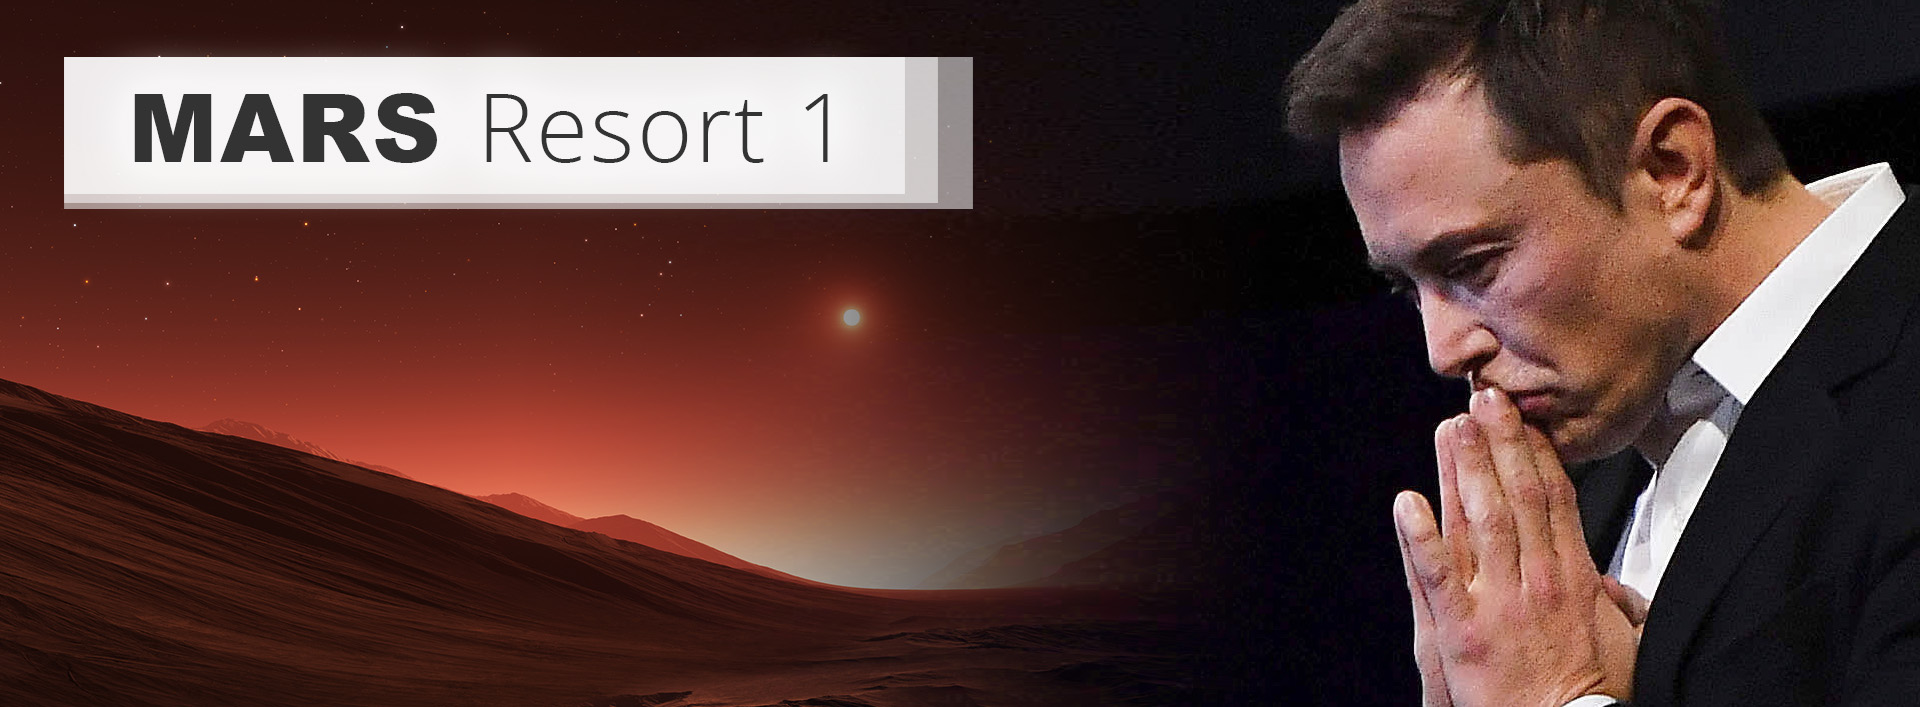 MARS-RESORT-1__A-Mars-Landscape_&_Elon-Musk